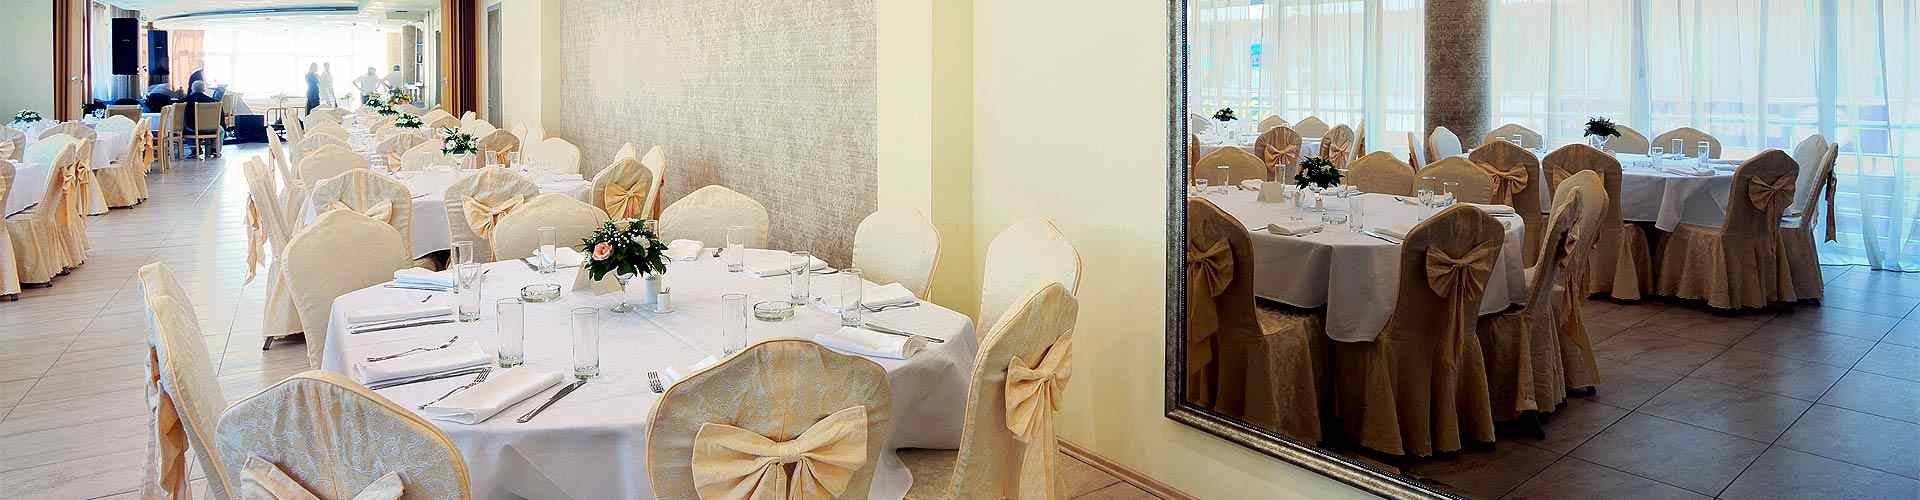 Restaurantes para bodas 2019 en Precendi